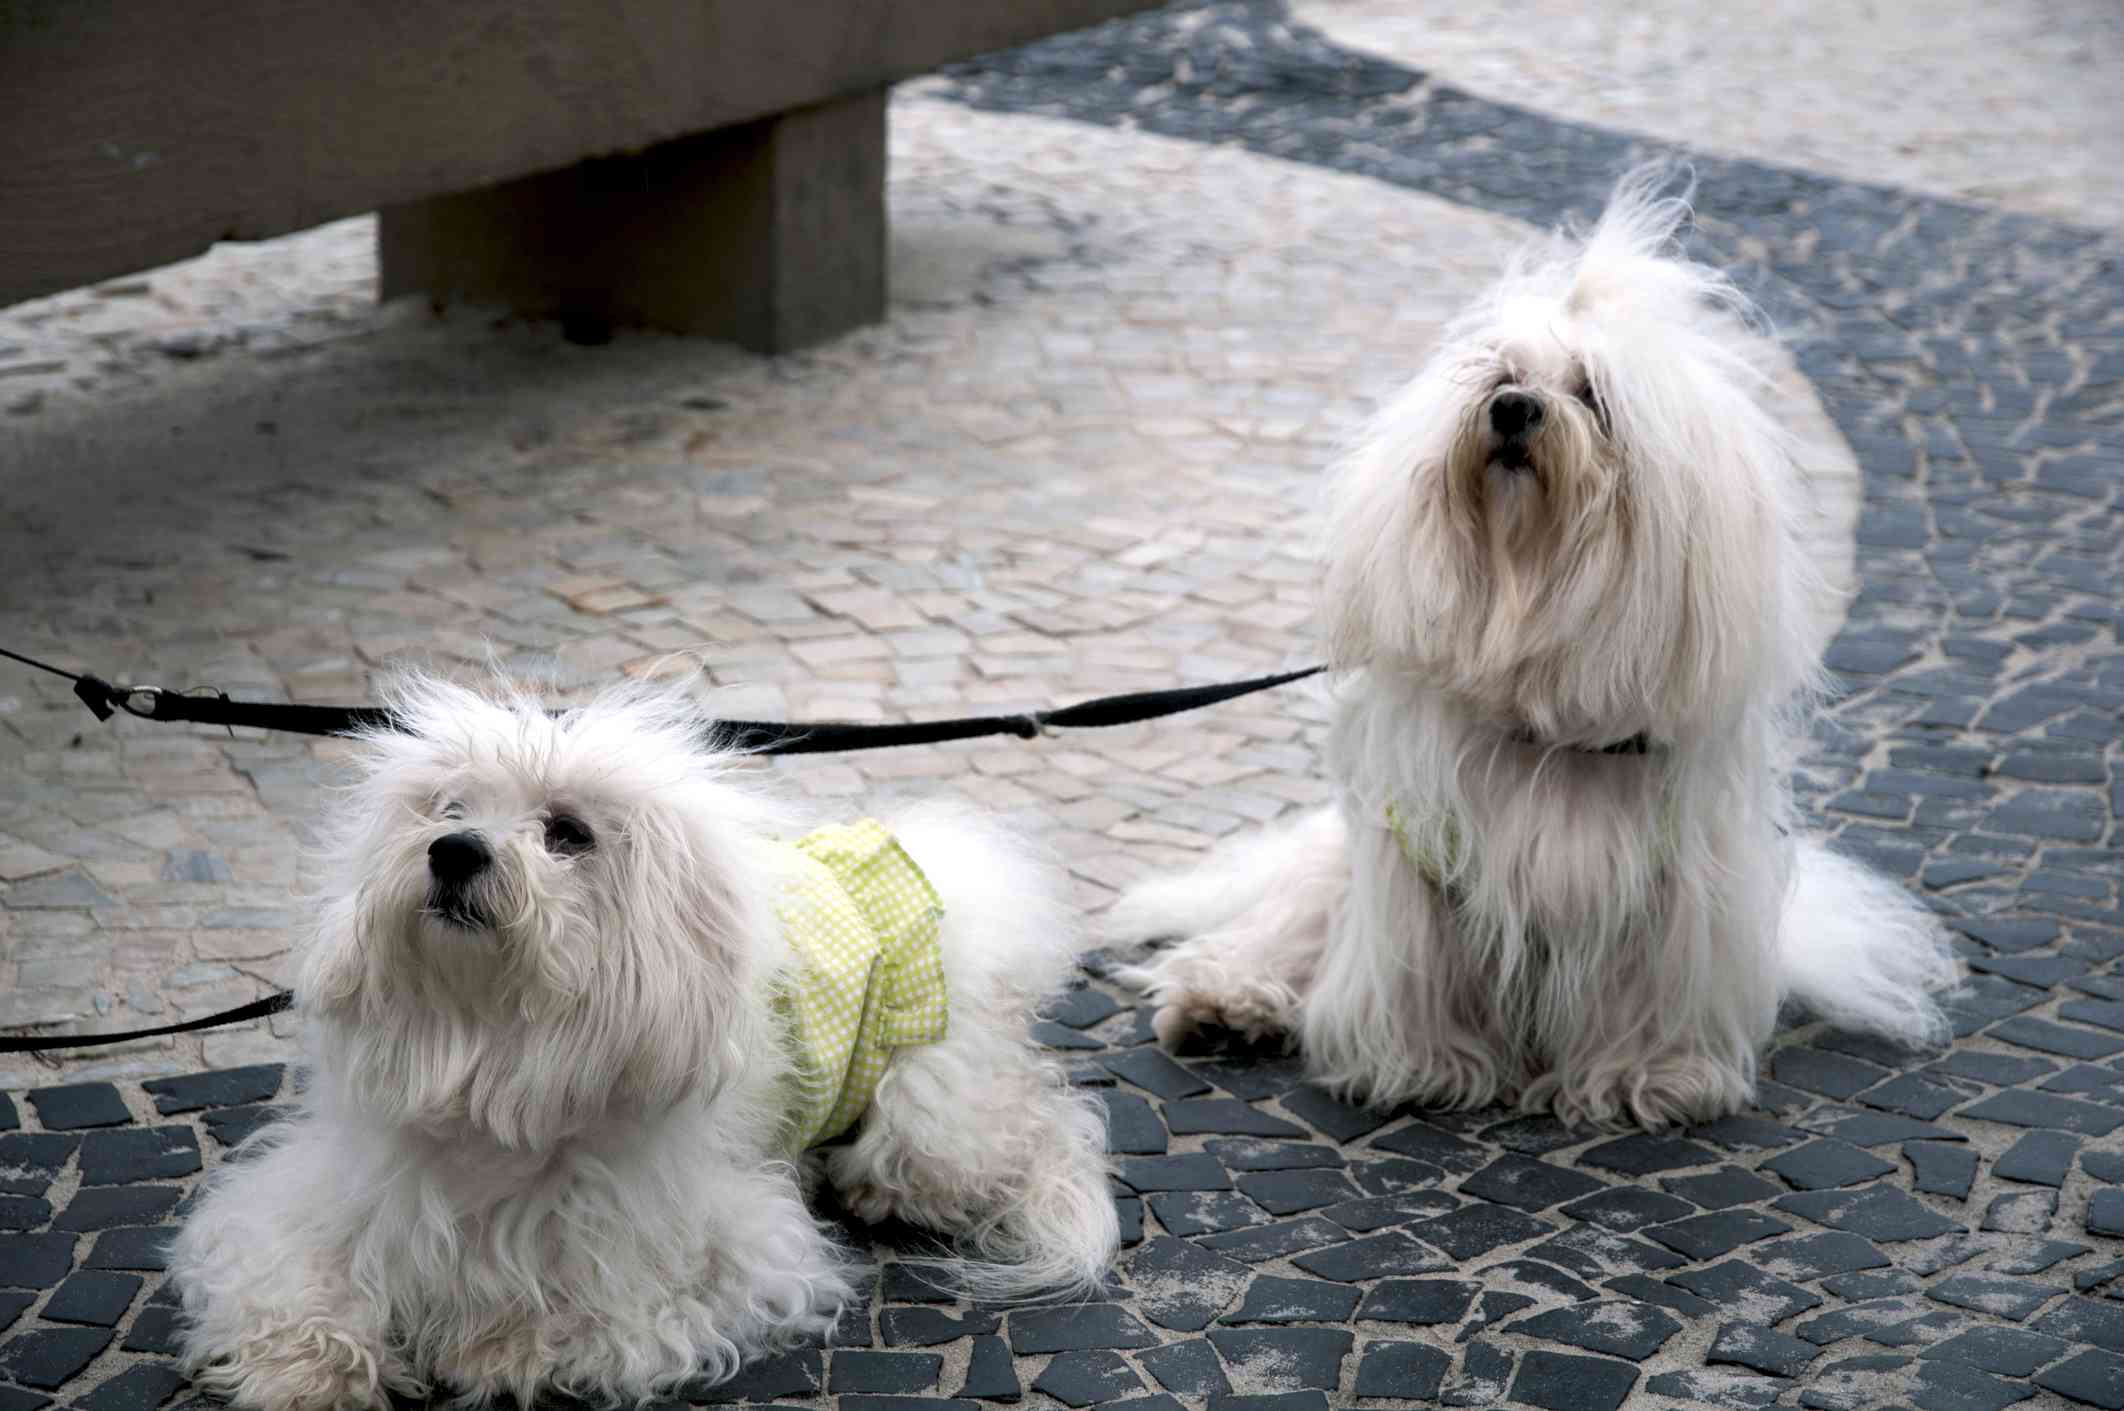 Two Coton de Tulear dogs